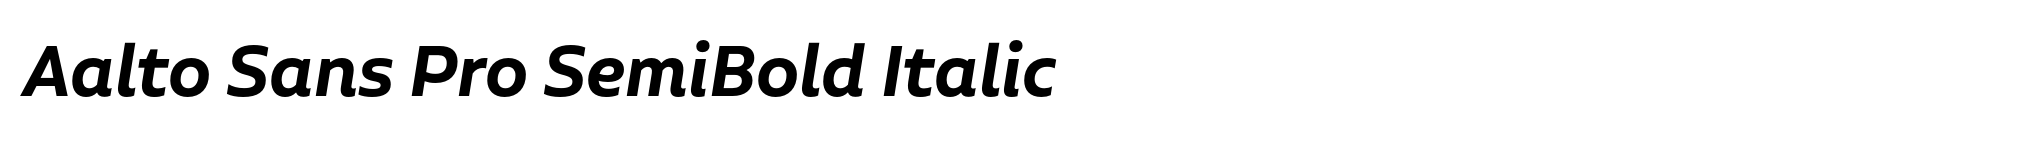 Aalto Sans Pro SemiBold Italic image